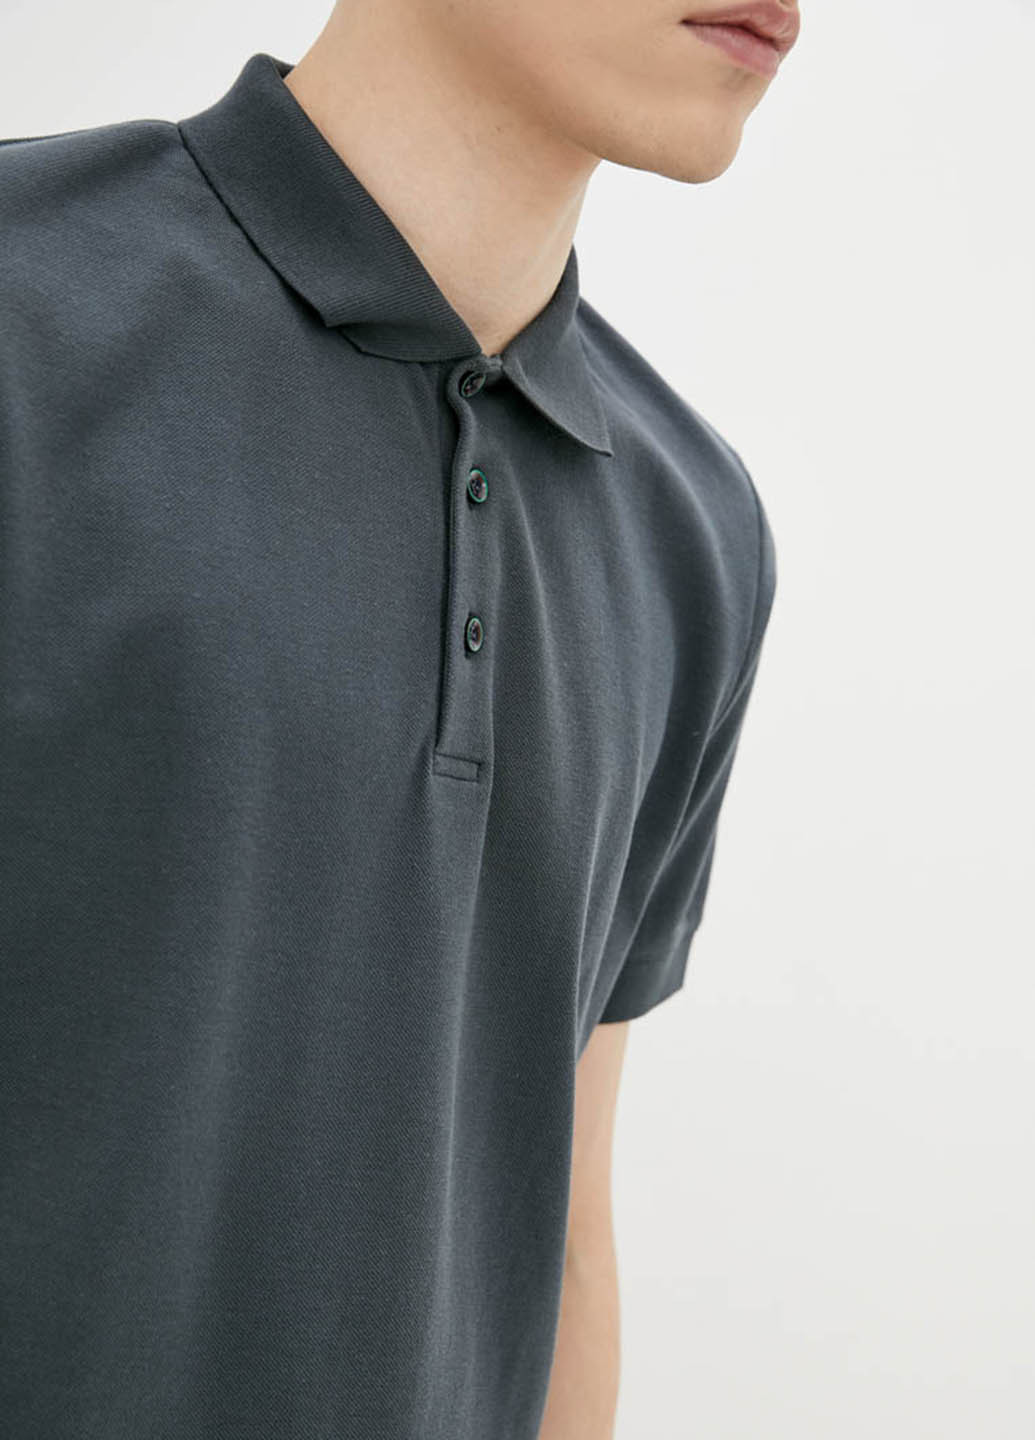 Темно-серая футболка-поло для мужчин Promin однотонная